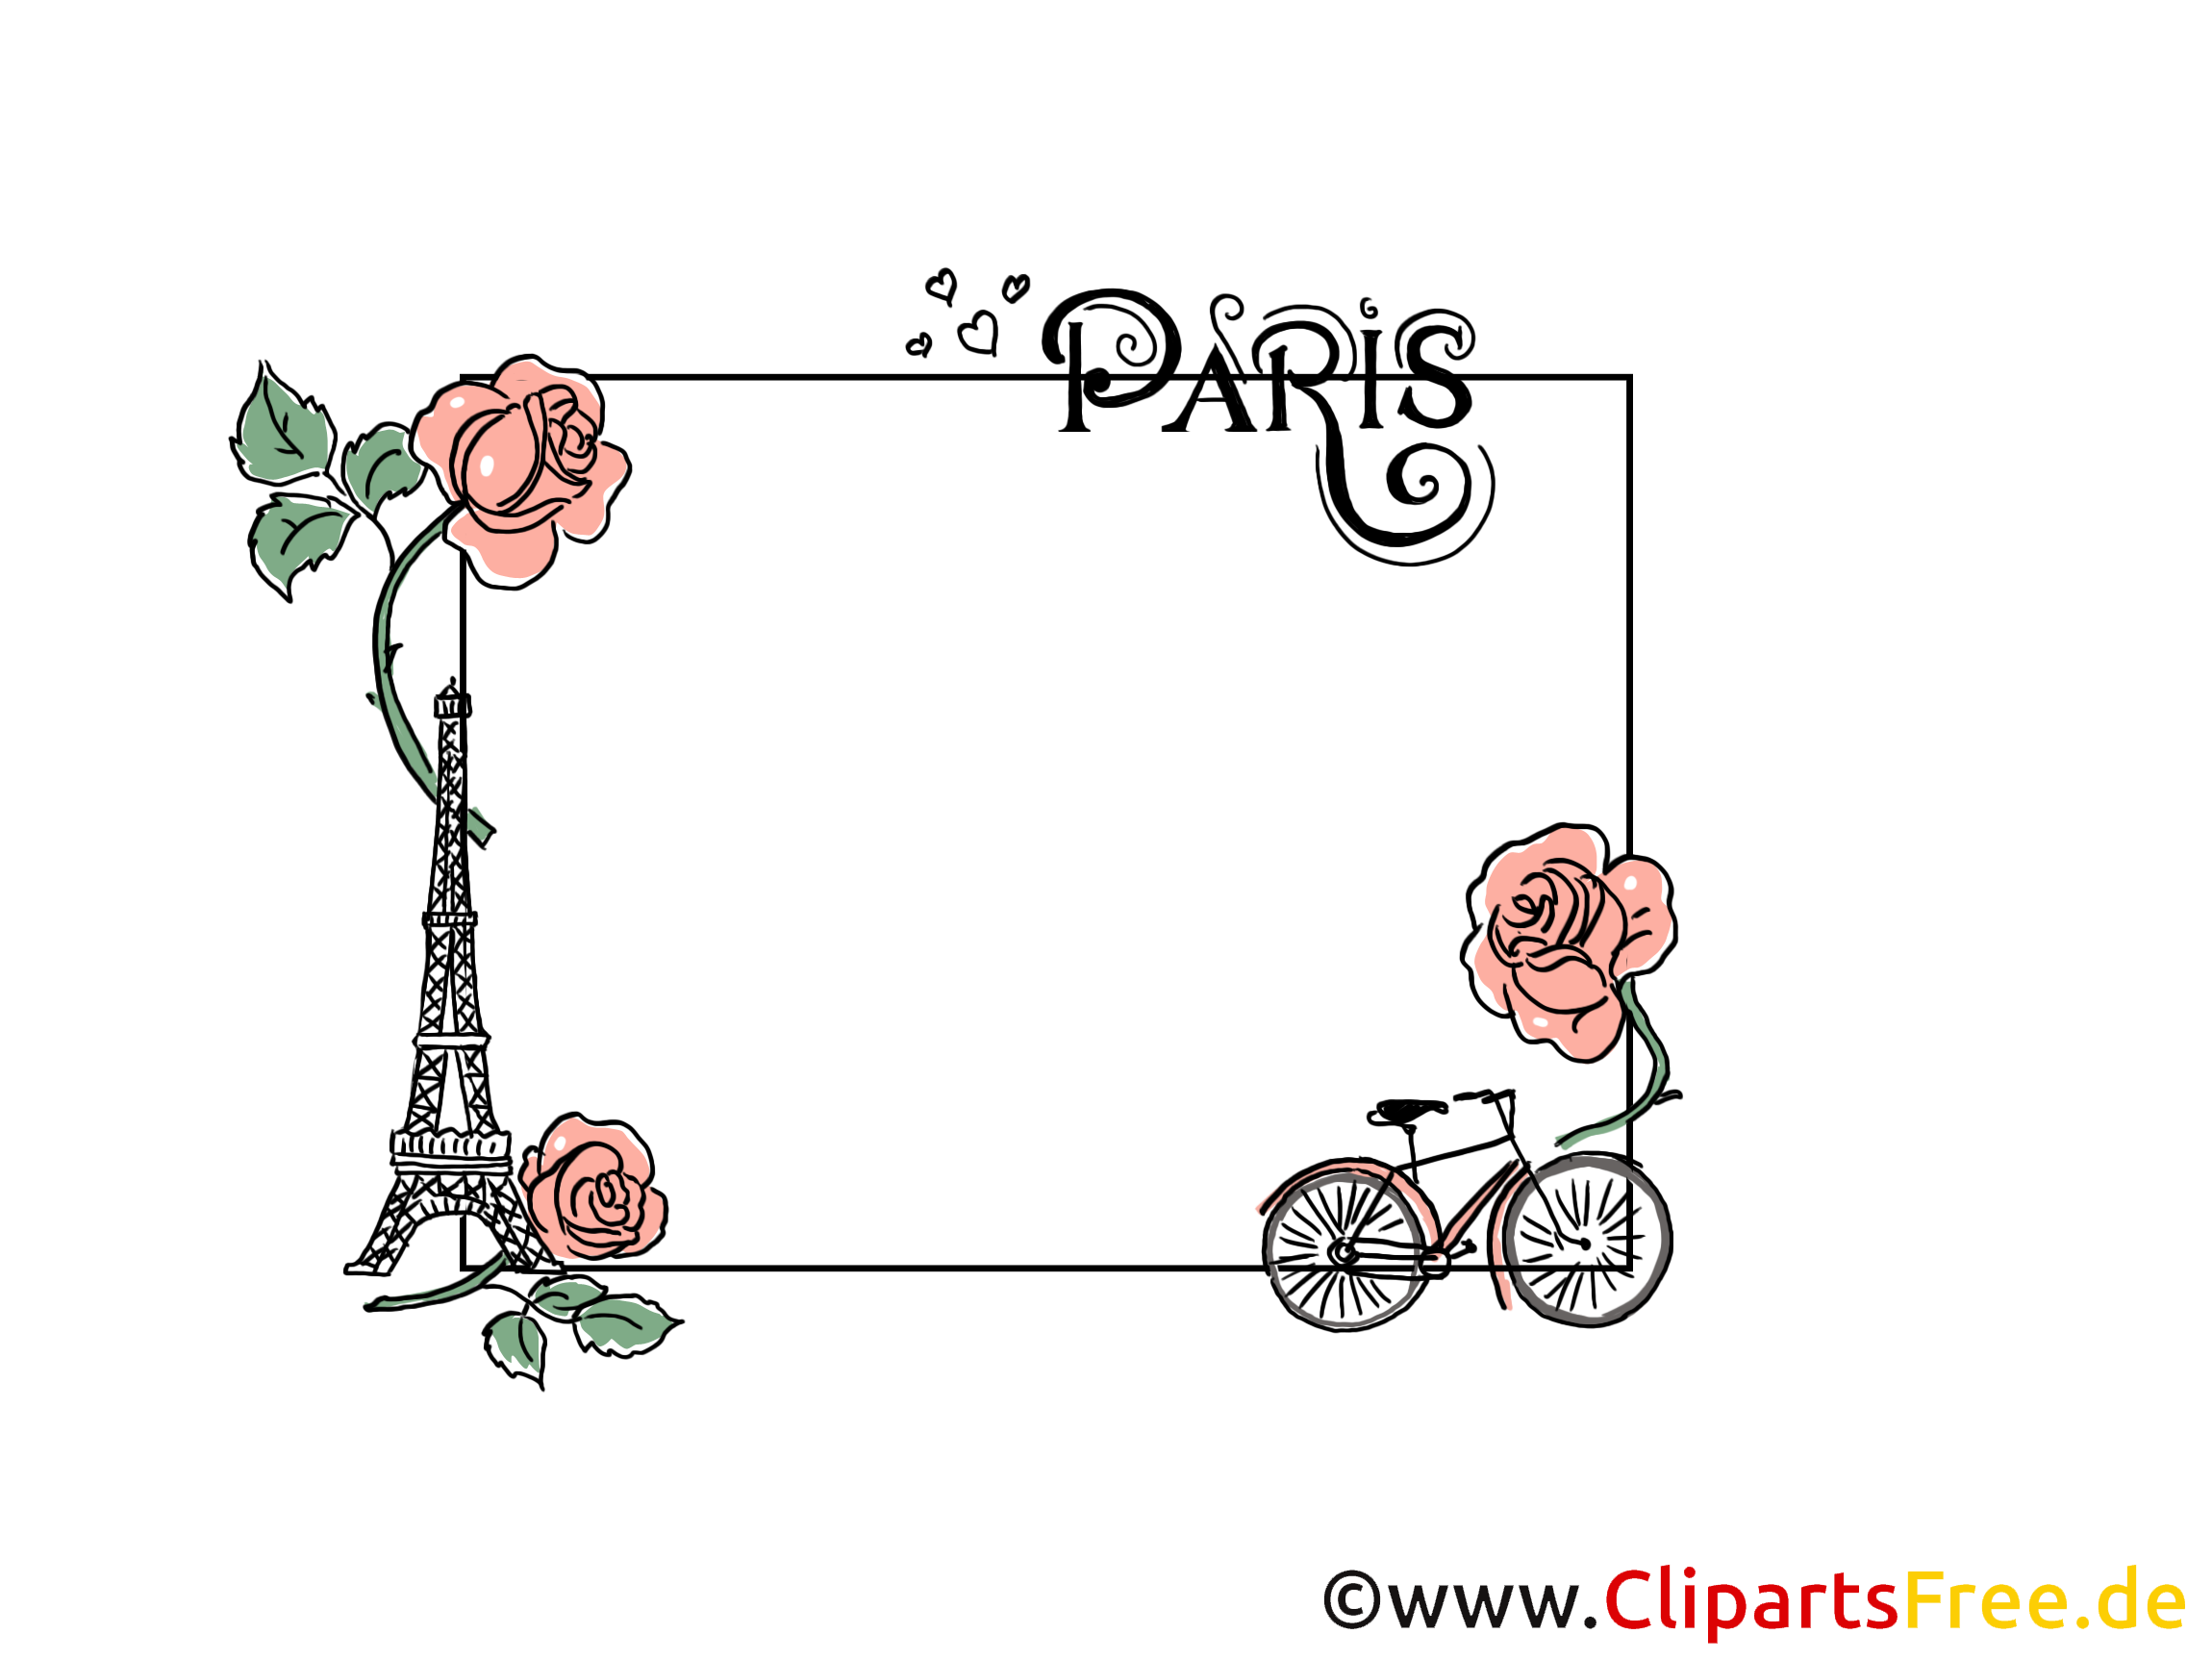 Paris roses illustration – Cadre images